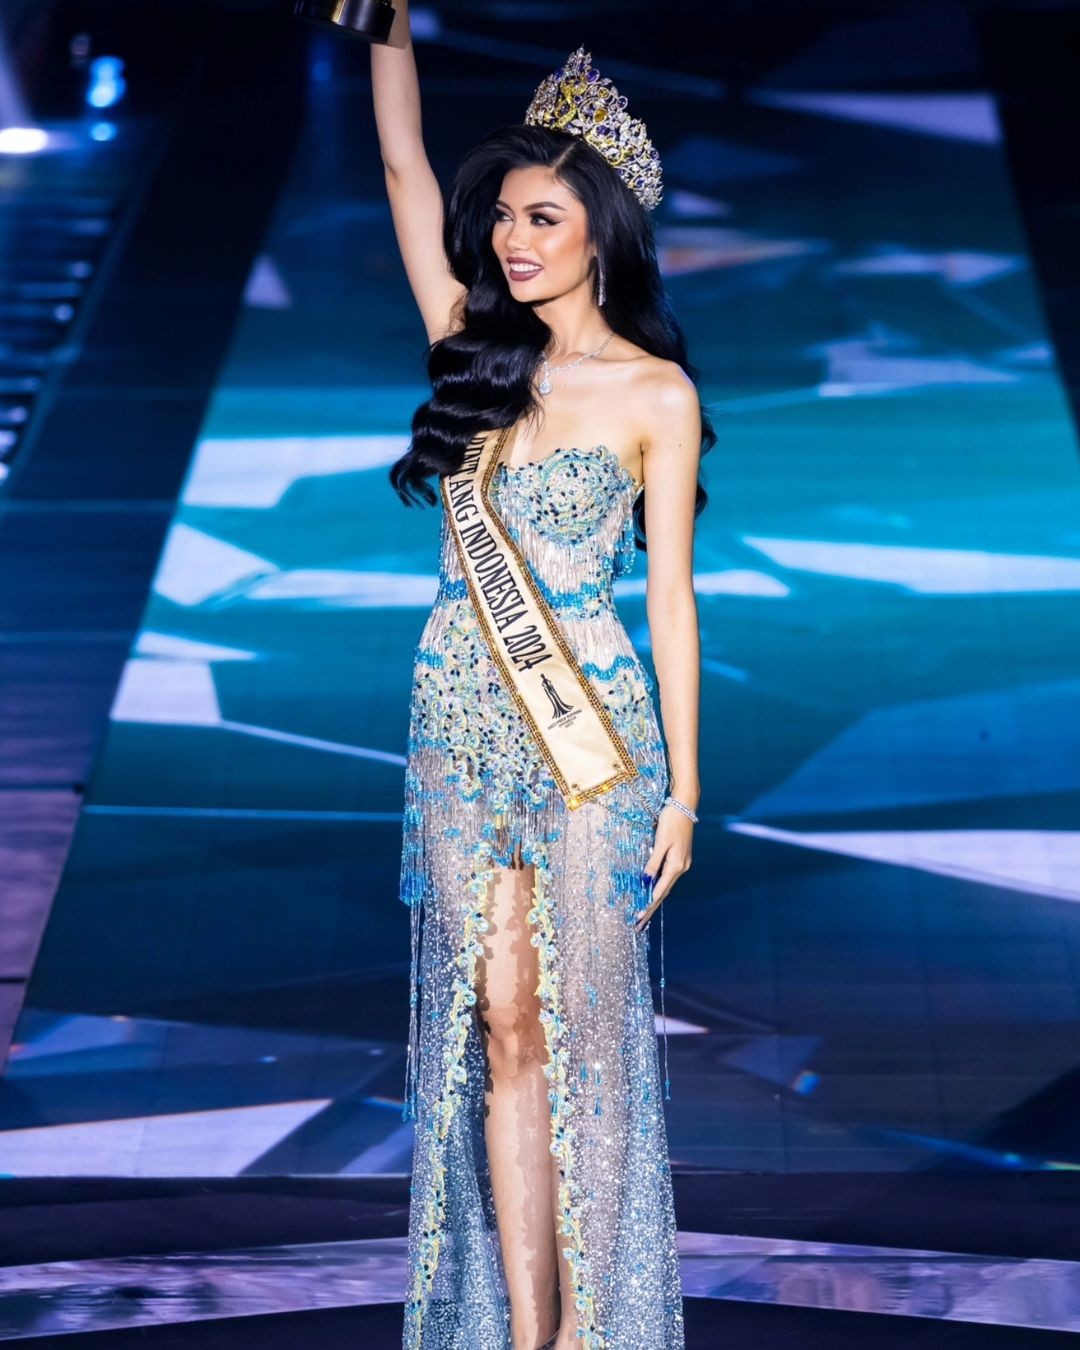 Trả lời thông minh về làm từ thiện ồn ào hay thầm lặng, người mẫu đăng quang Hoa hậu Hòa bình Indonesia